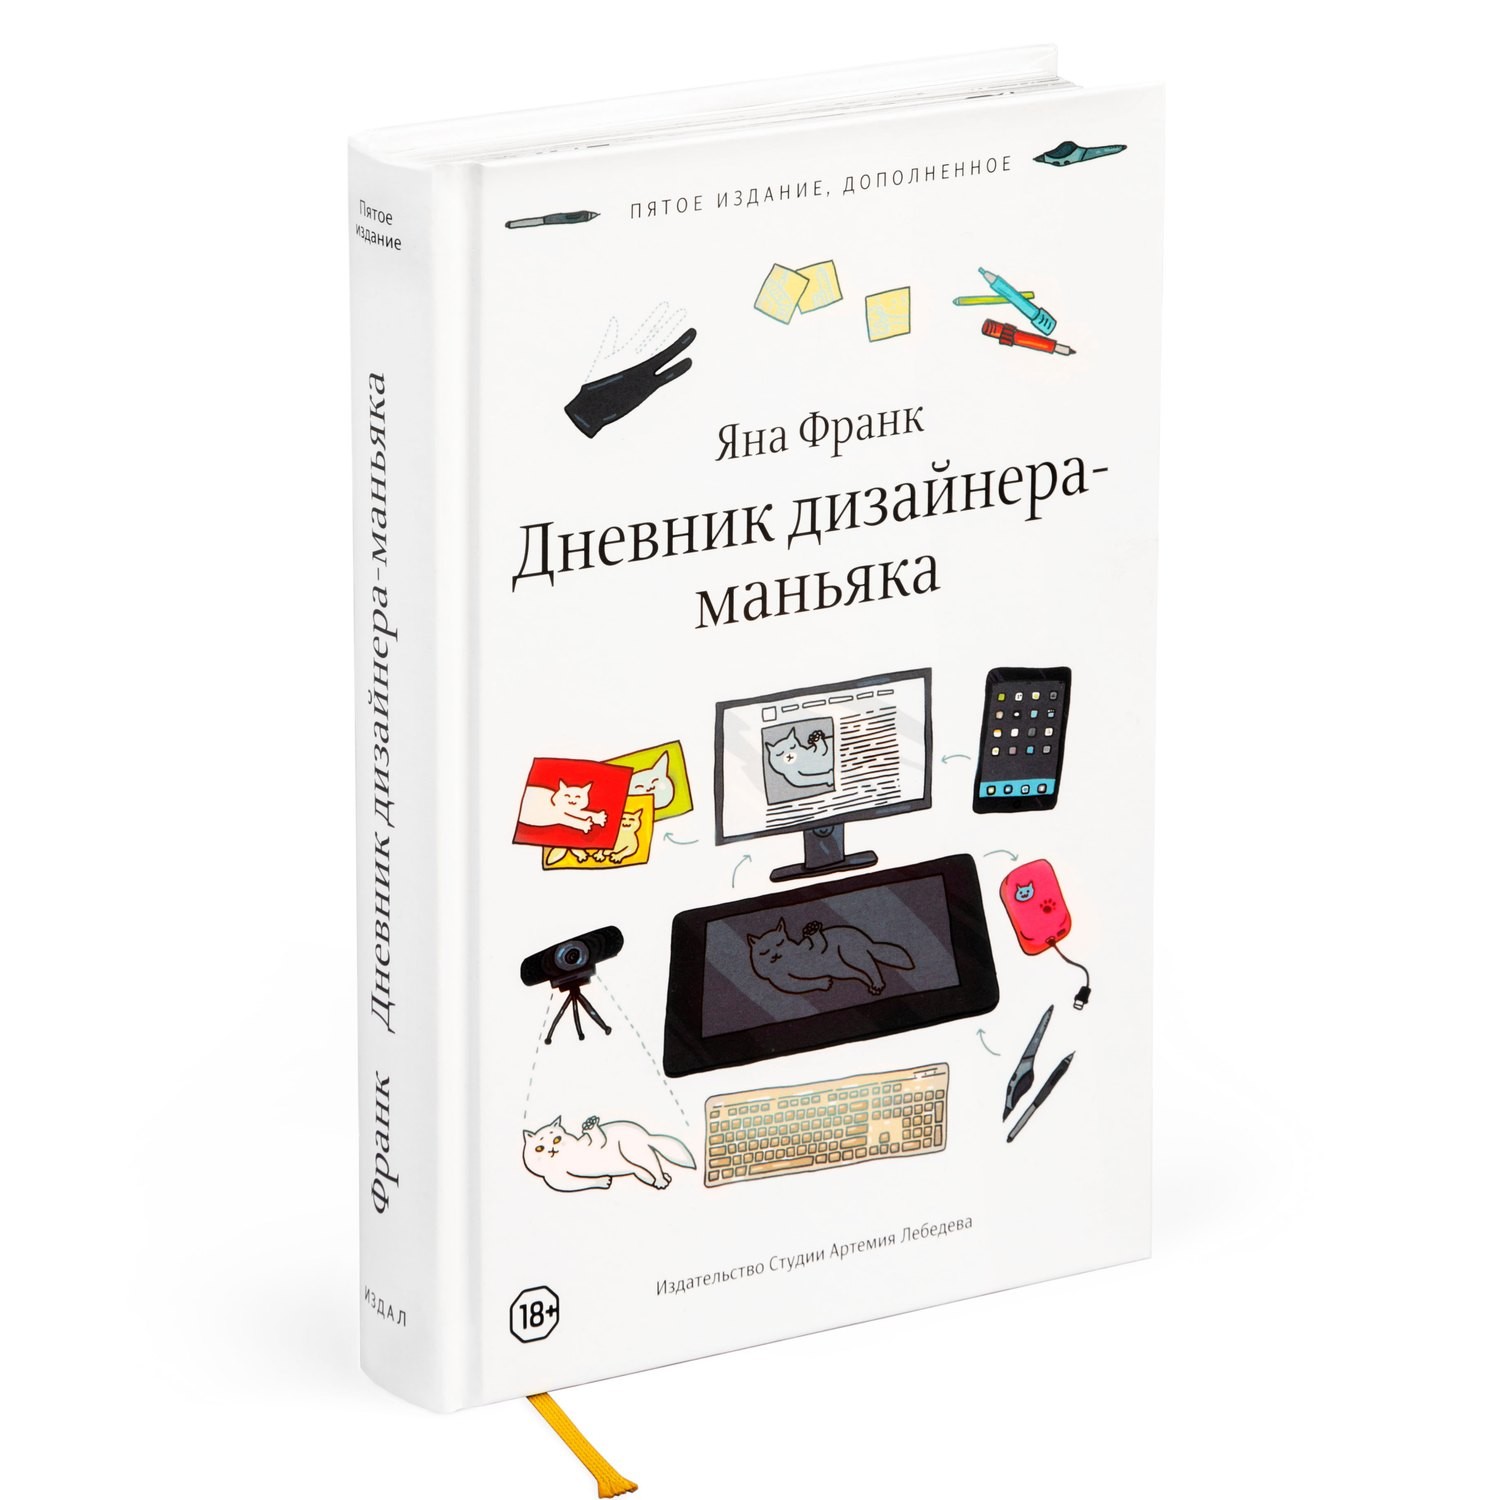 Книга Яны Франк "Дневник дизайнера-маньяка" с автографом автора